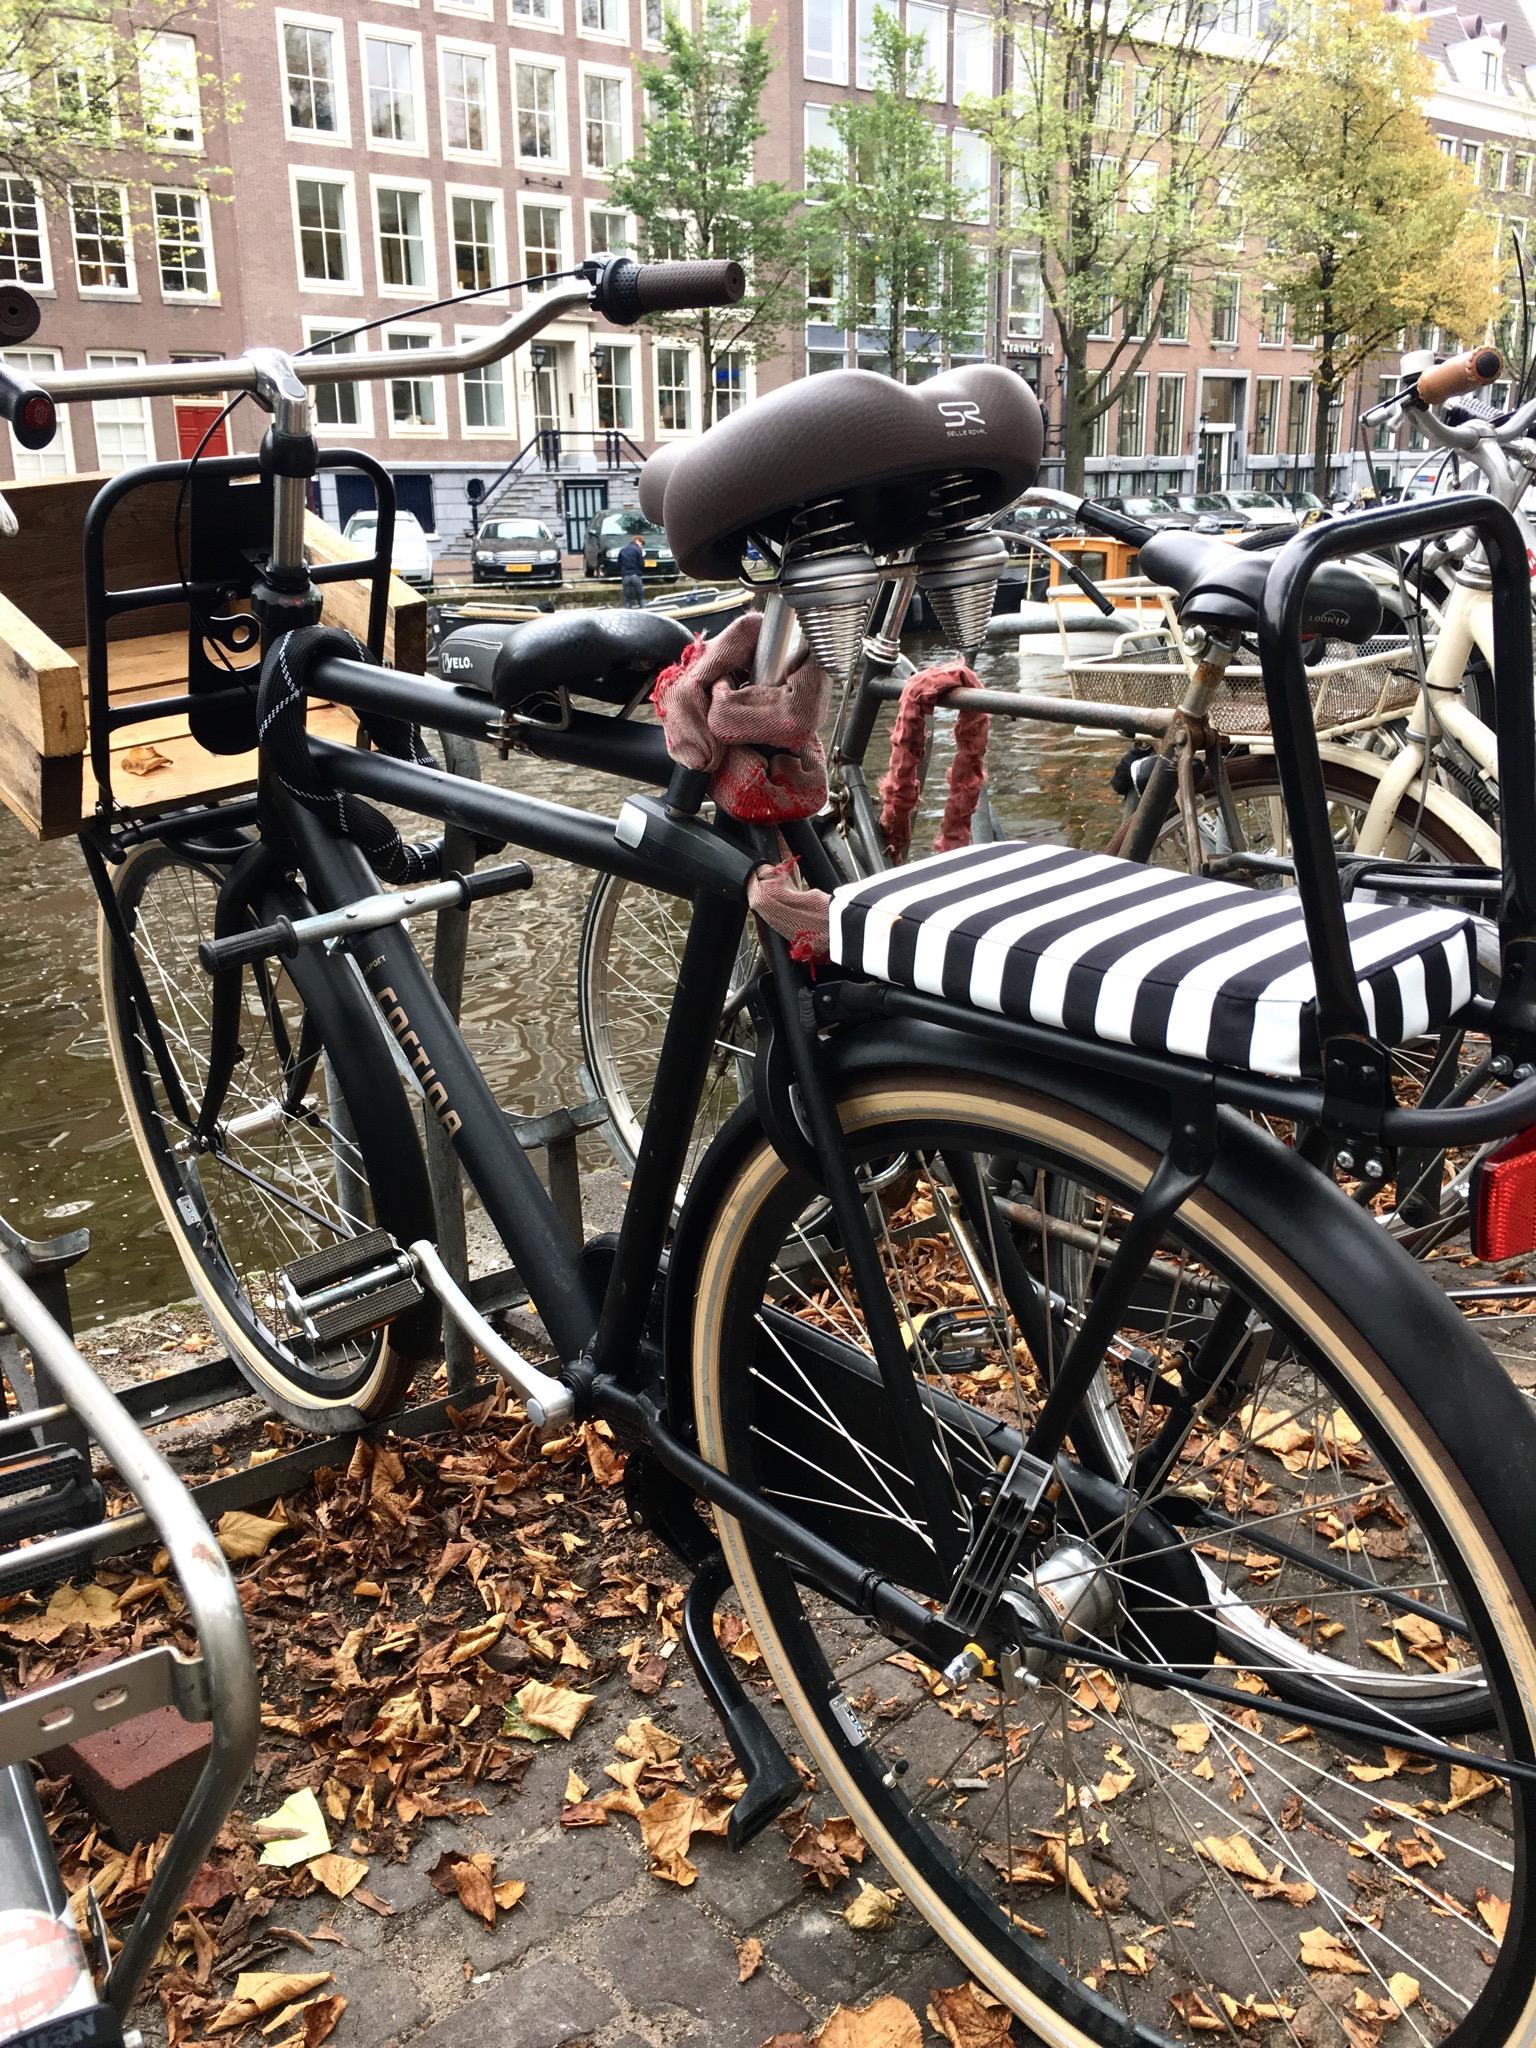 Amsterdam II 🖤 | Fahrräder ohne Ende

#Amsterdam #Städtetrip #Reisen #Holland #Kurzurlaub #Fahrrad 